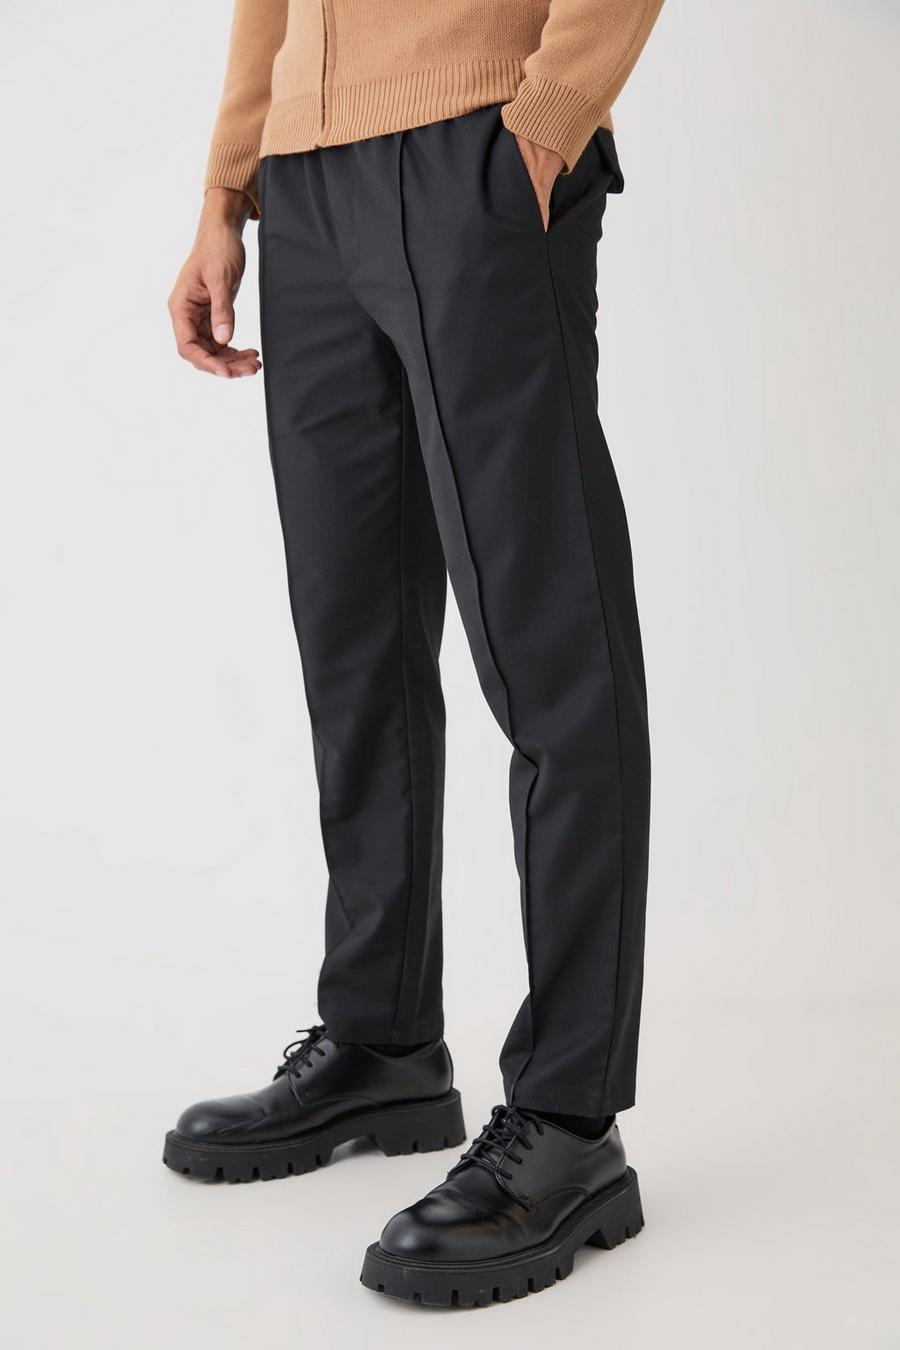 Pantalón texturizado entallado holgado con cinturón, Black image number 1